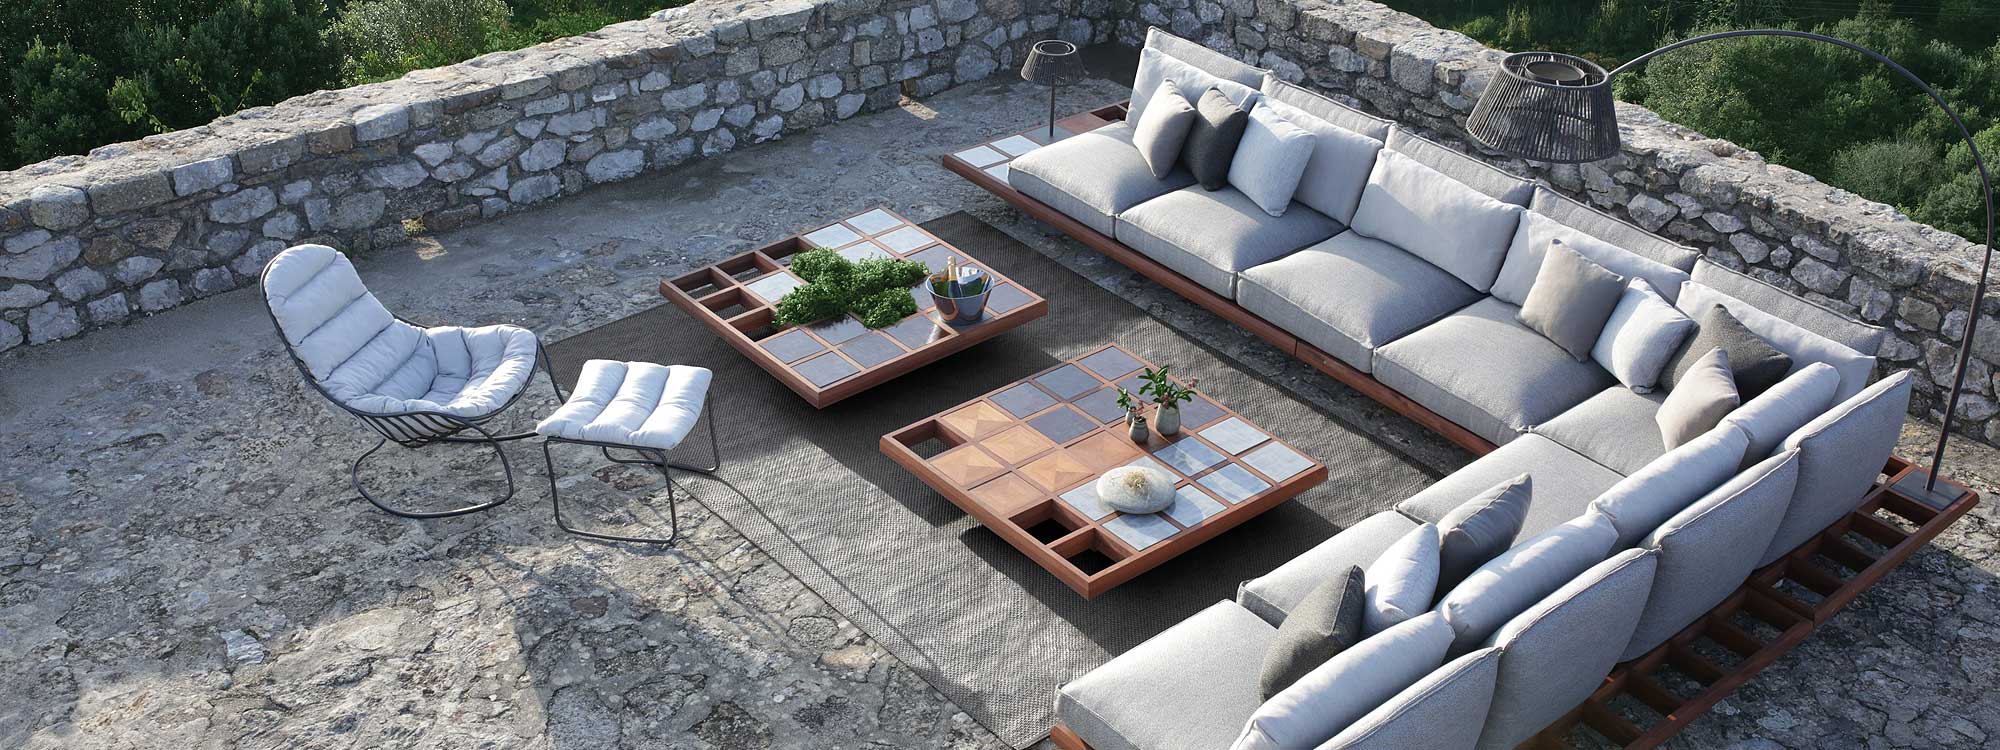 Image of Mozaix mahogany garden sofa & Luxury outdoor carpets by Royal Botania